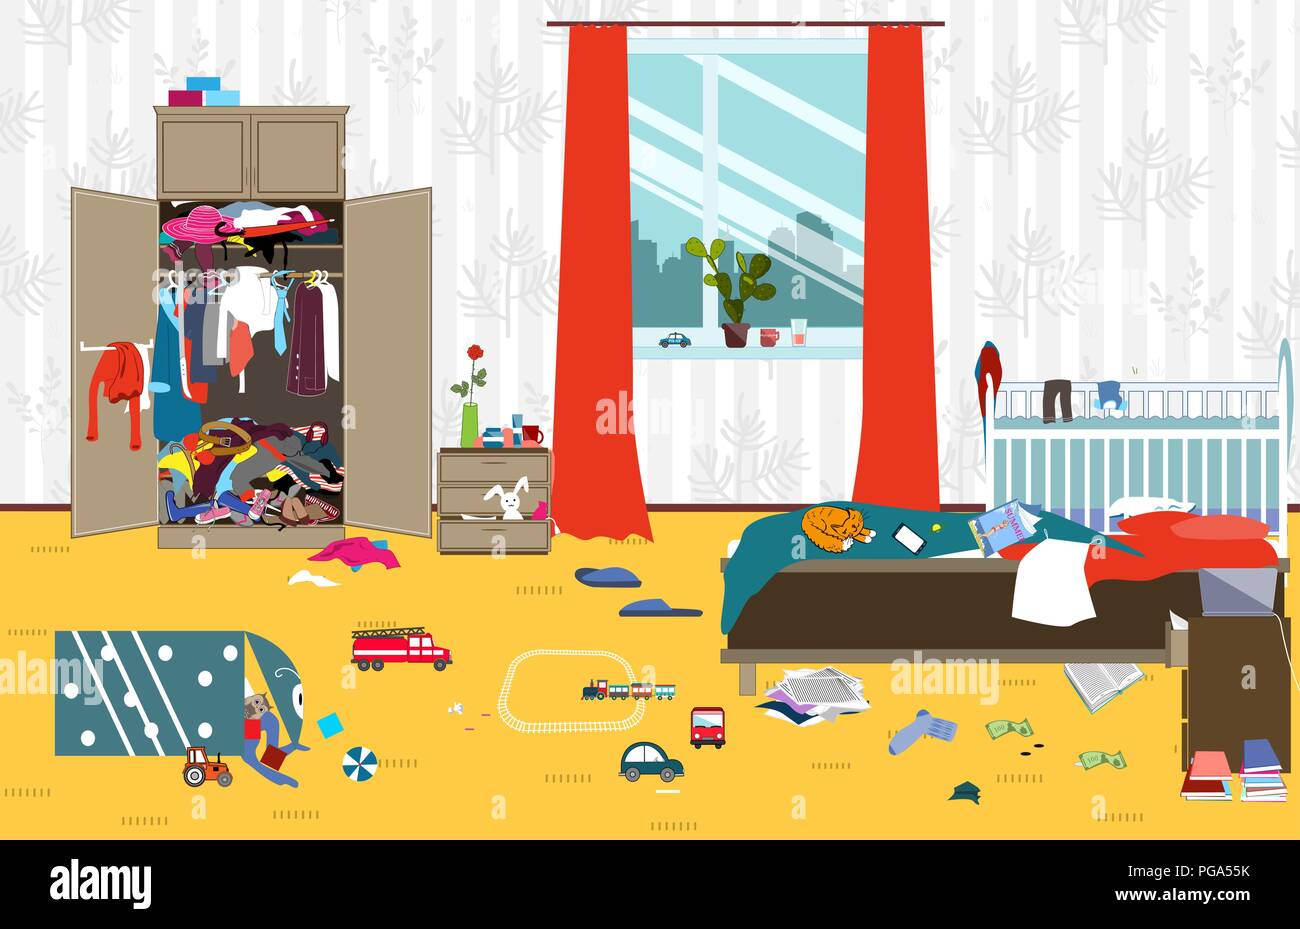 Unordentliches Zimmer, wo junge Familie mit Baby lebt. Unaufgeräumtes Zimmer. Cartoon Chaos im Zimmer. Nicht abgeholte Spielzeug, Dinge. Reinigung Vector Illustration. Stock Vektor